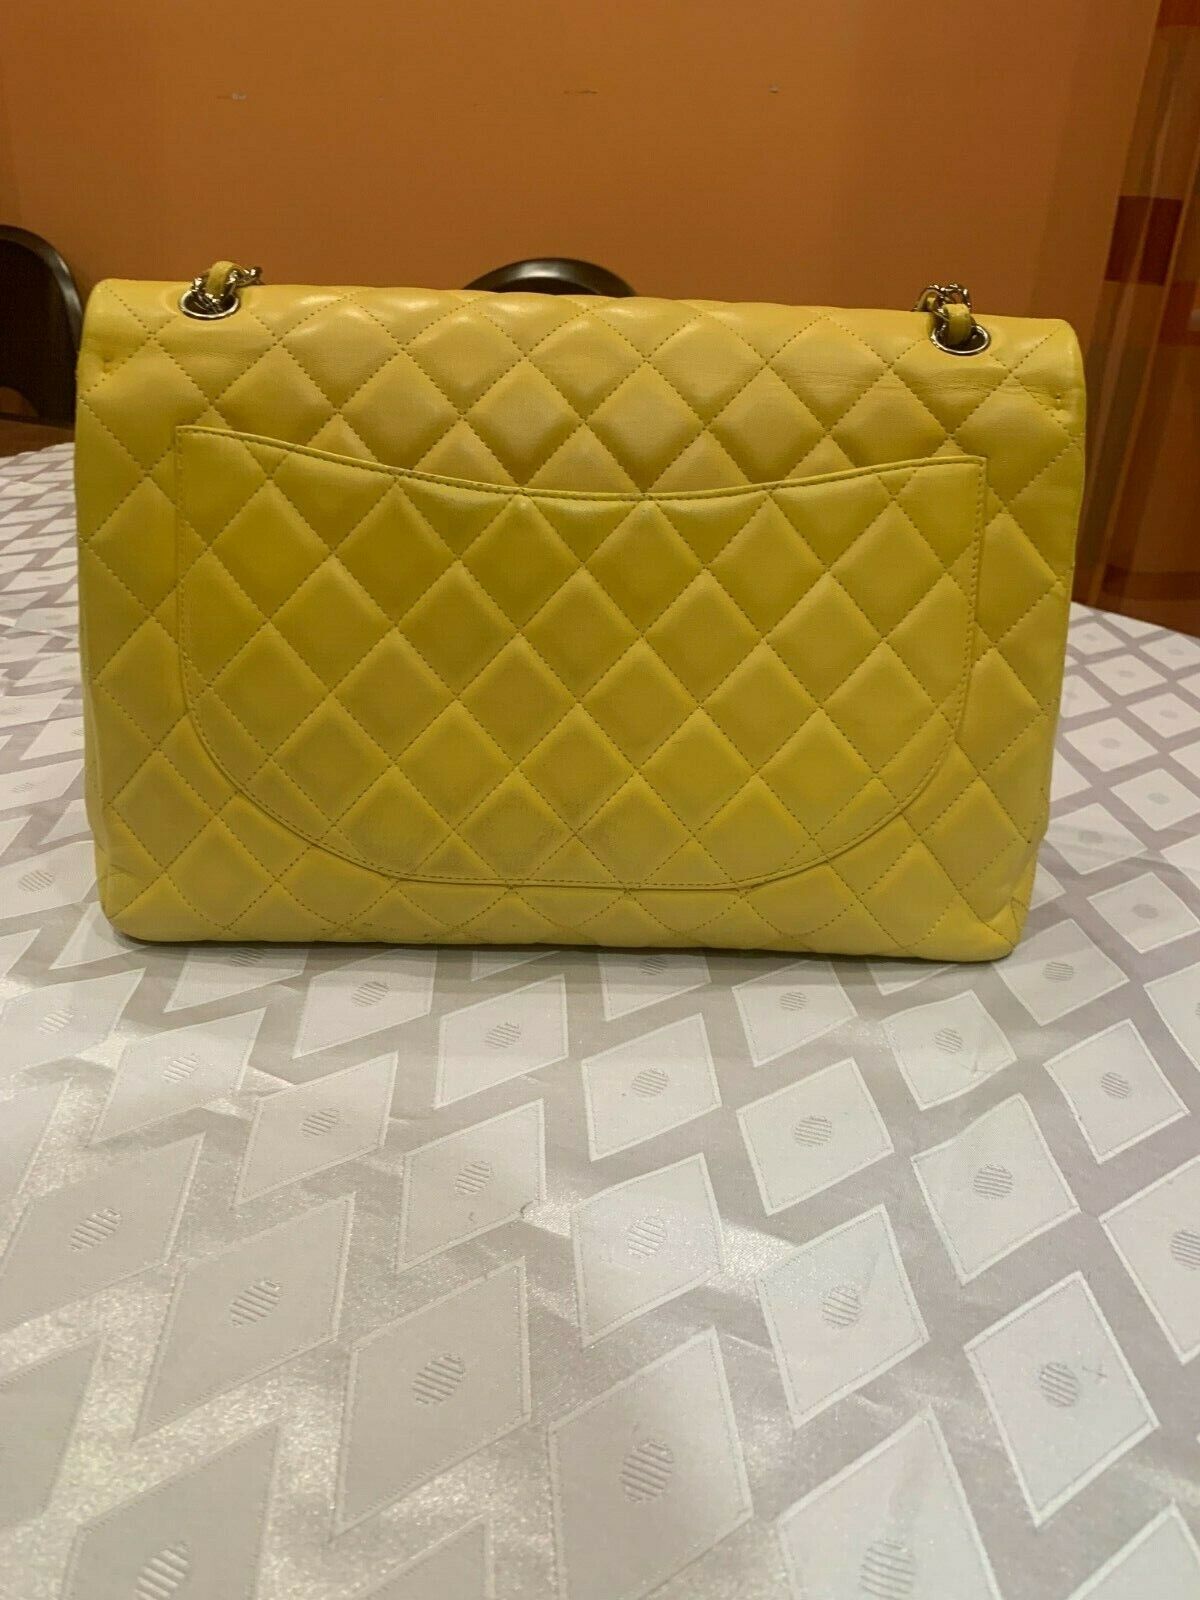 Chanel Maxi Jumbo Classic Yellow Leather Crossbody Shoulder Bag